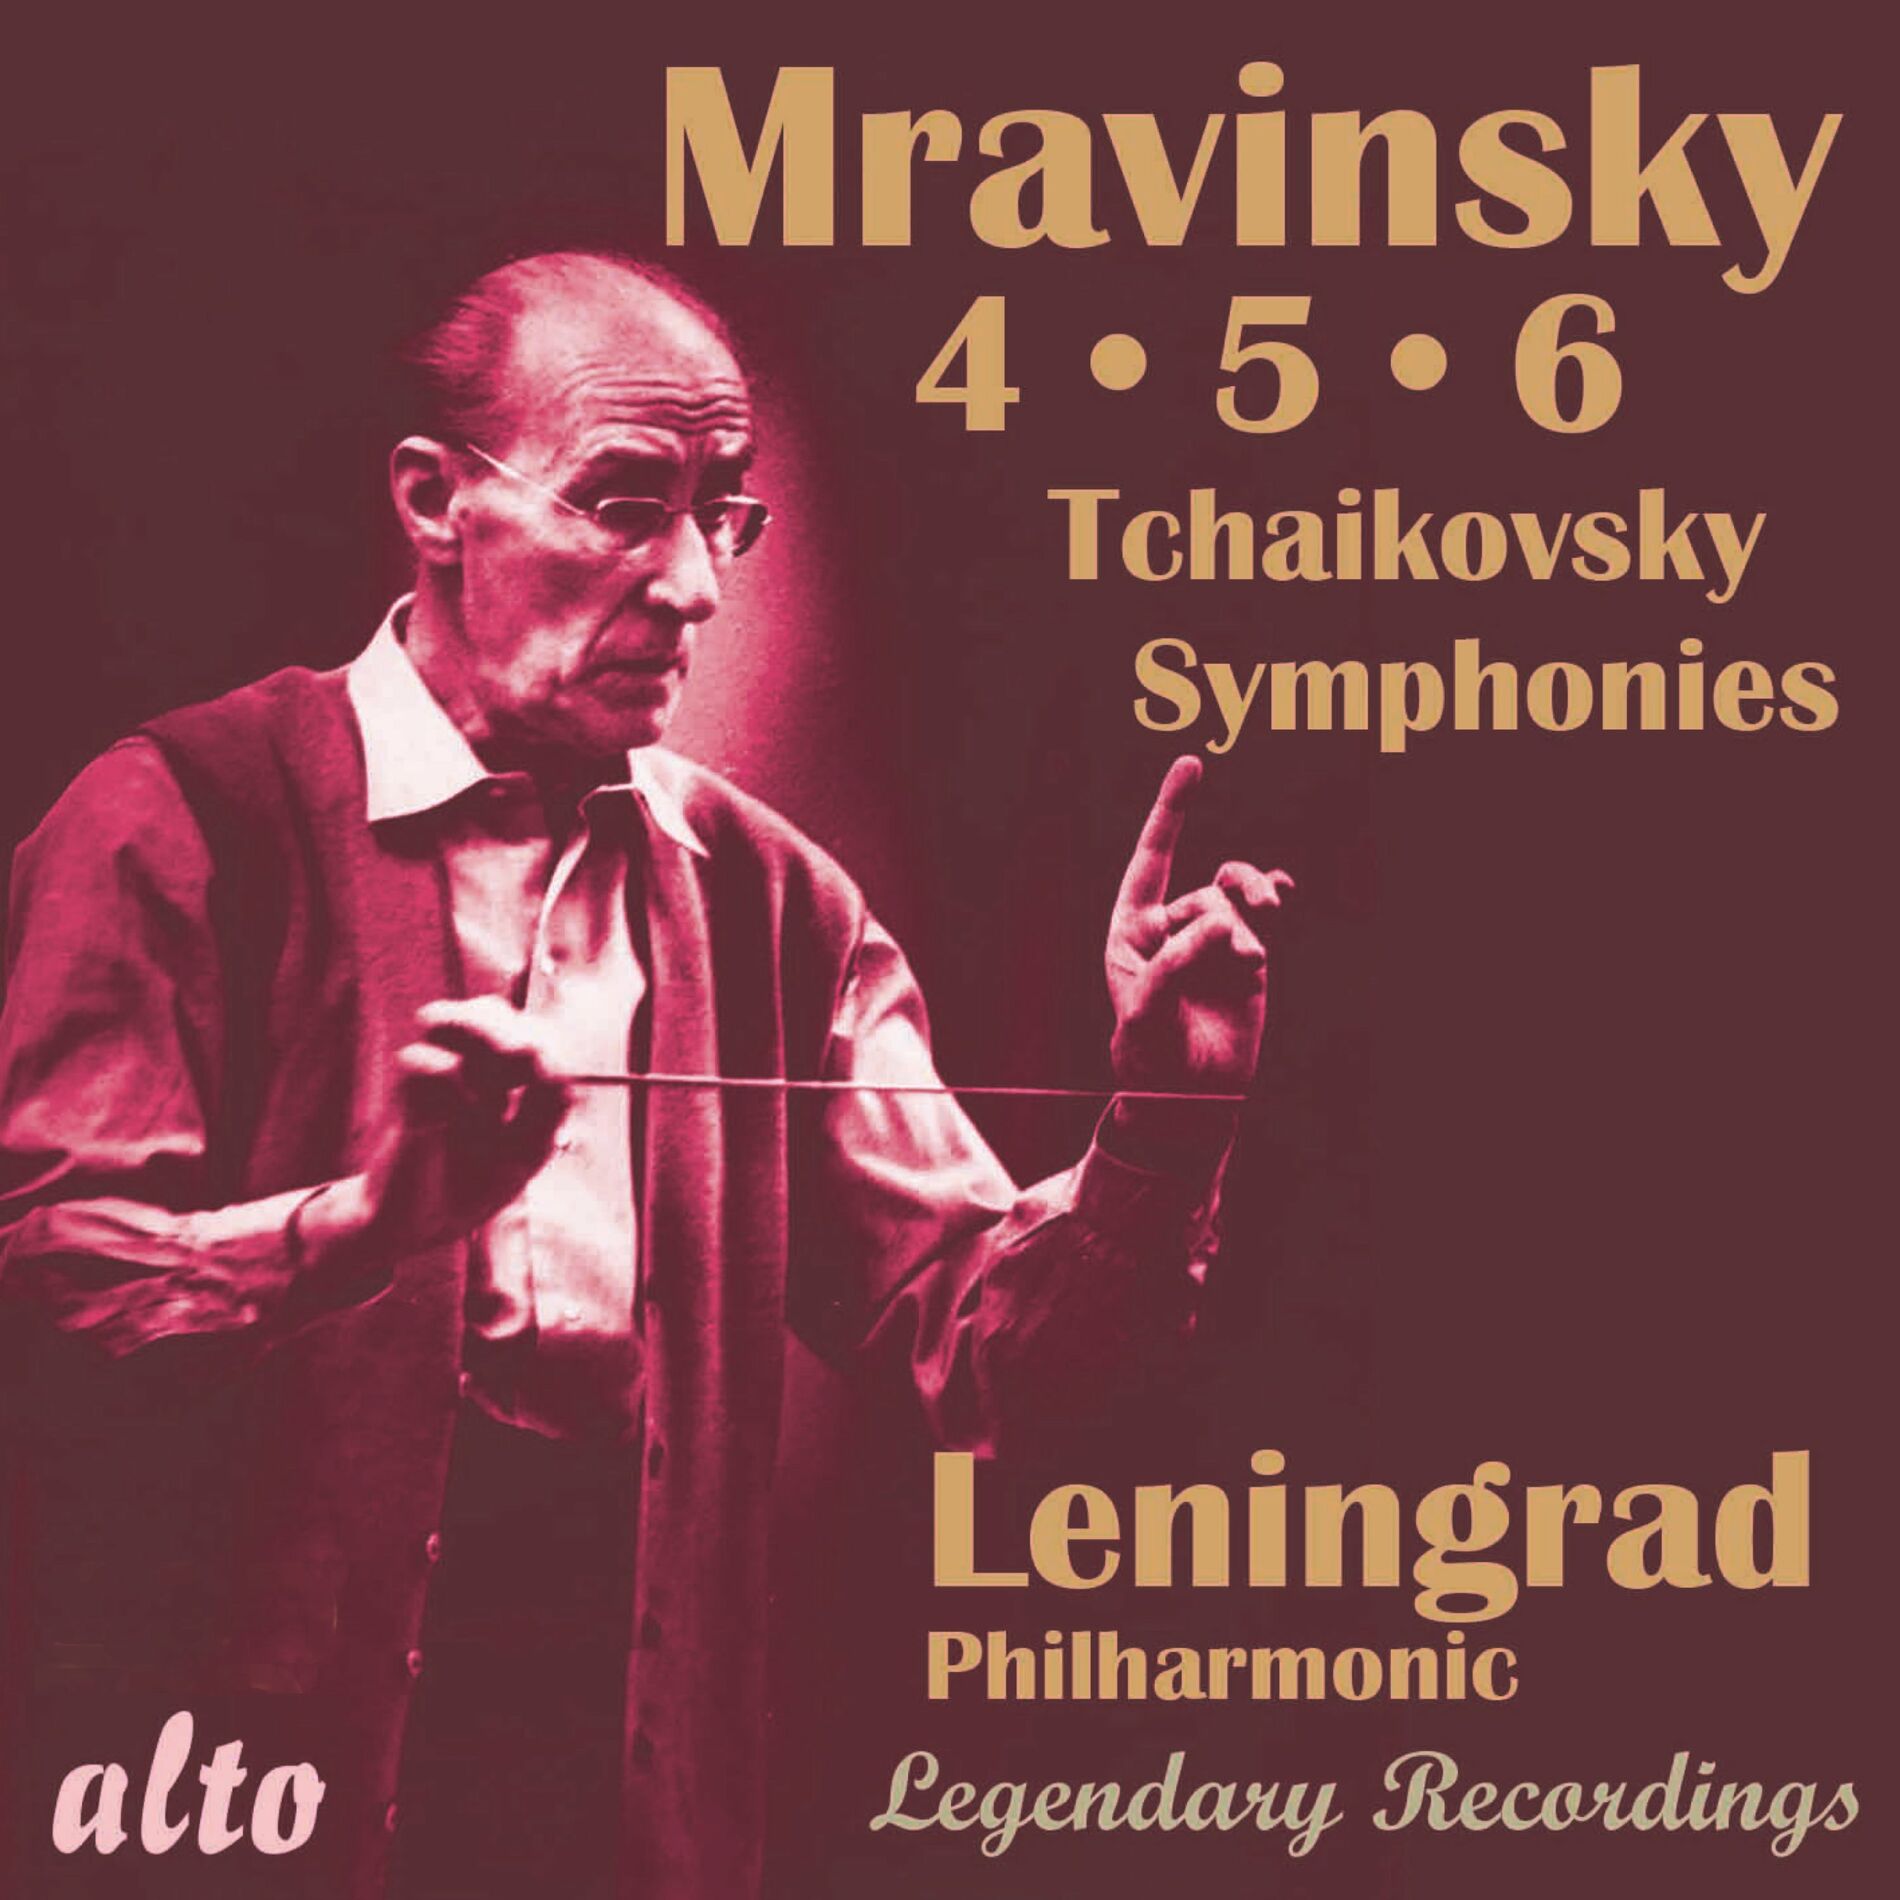 Evgeny Mravinsky: albums